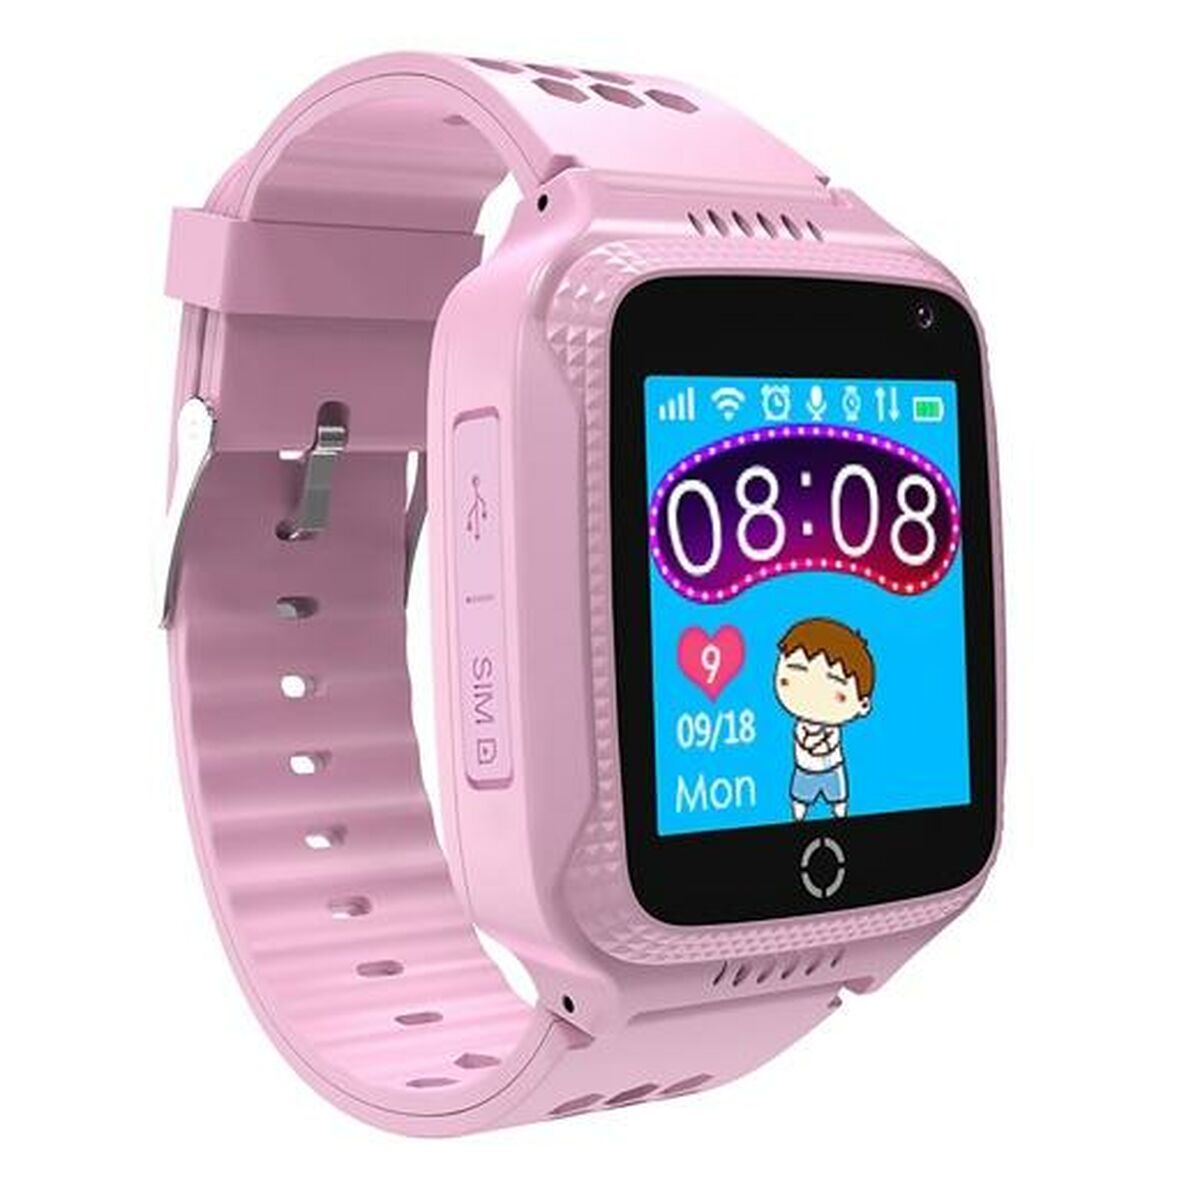 Smartwatch für Kinder Celly KIDSWATCH Rosa 1,44" - CA International 